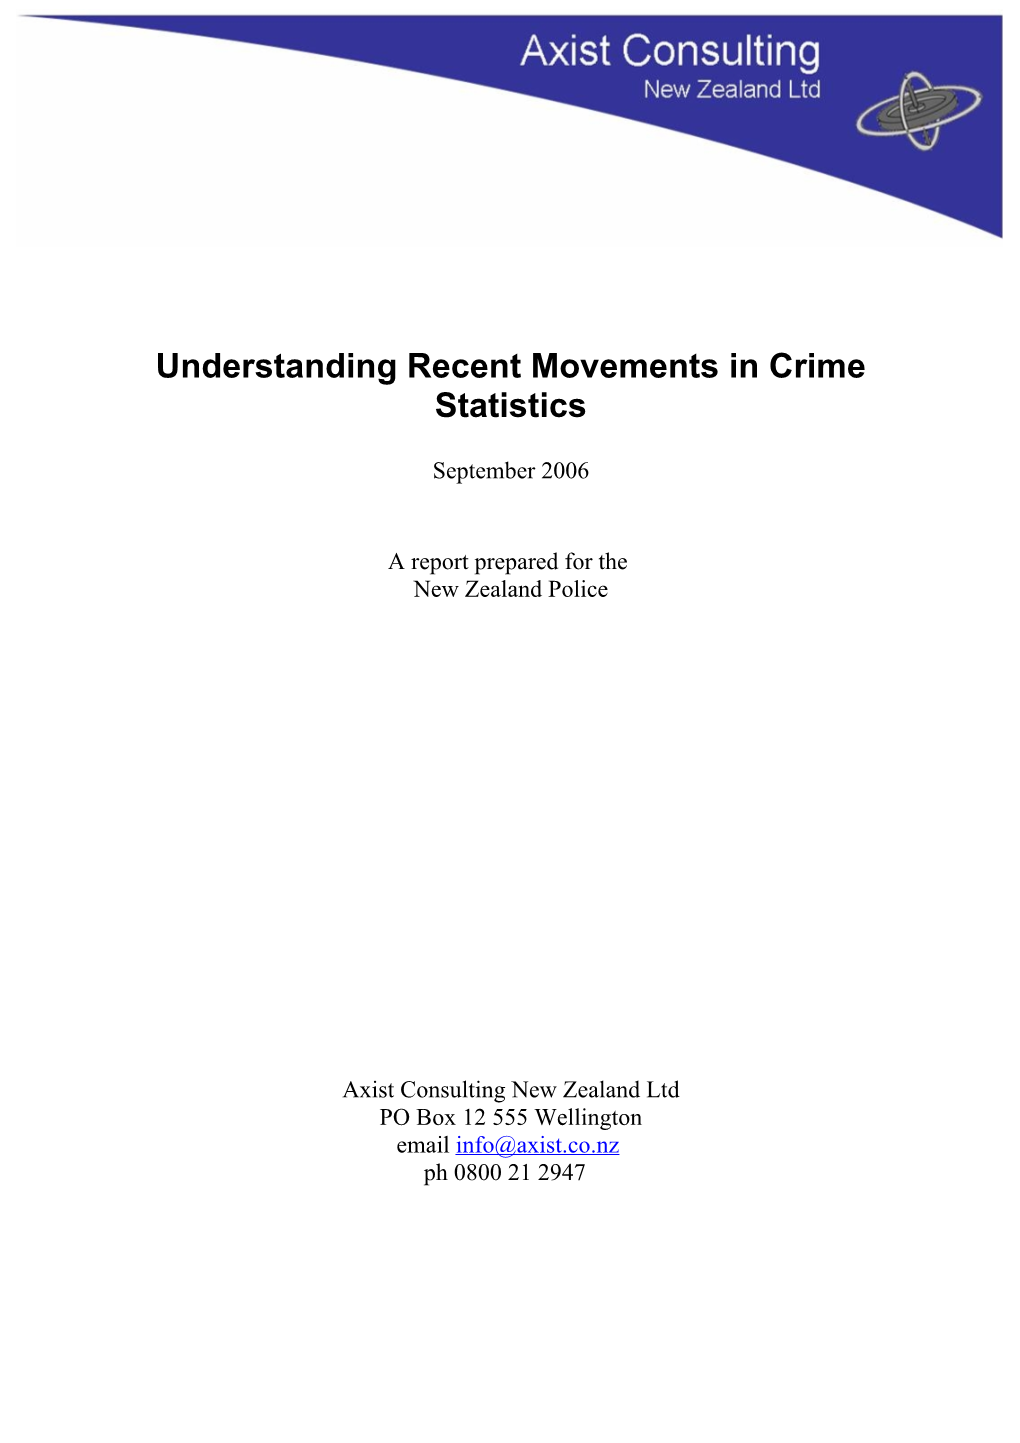 Understanding Crime Statistics Movement